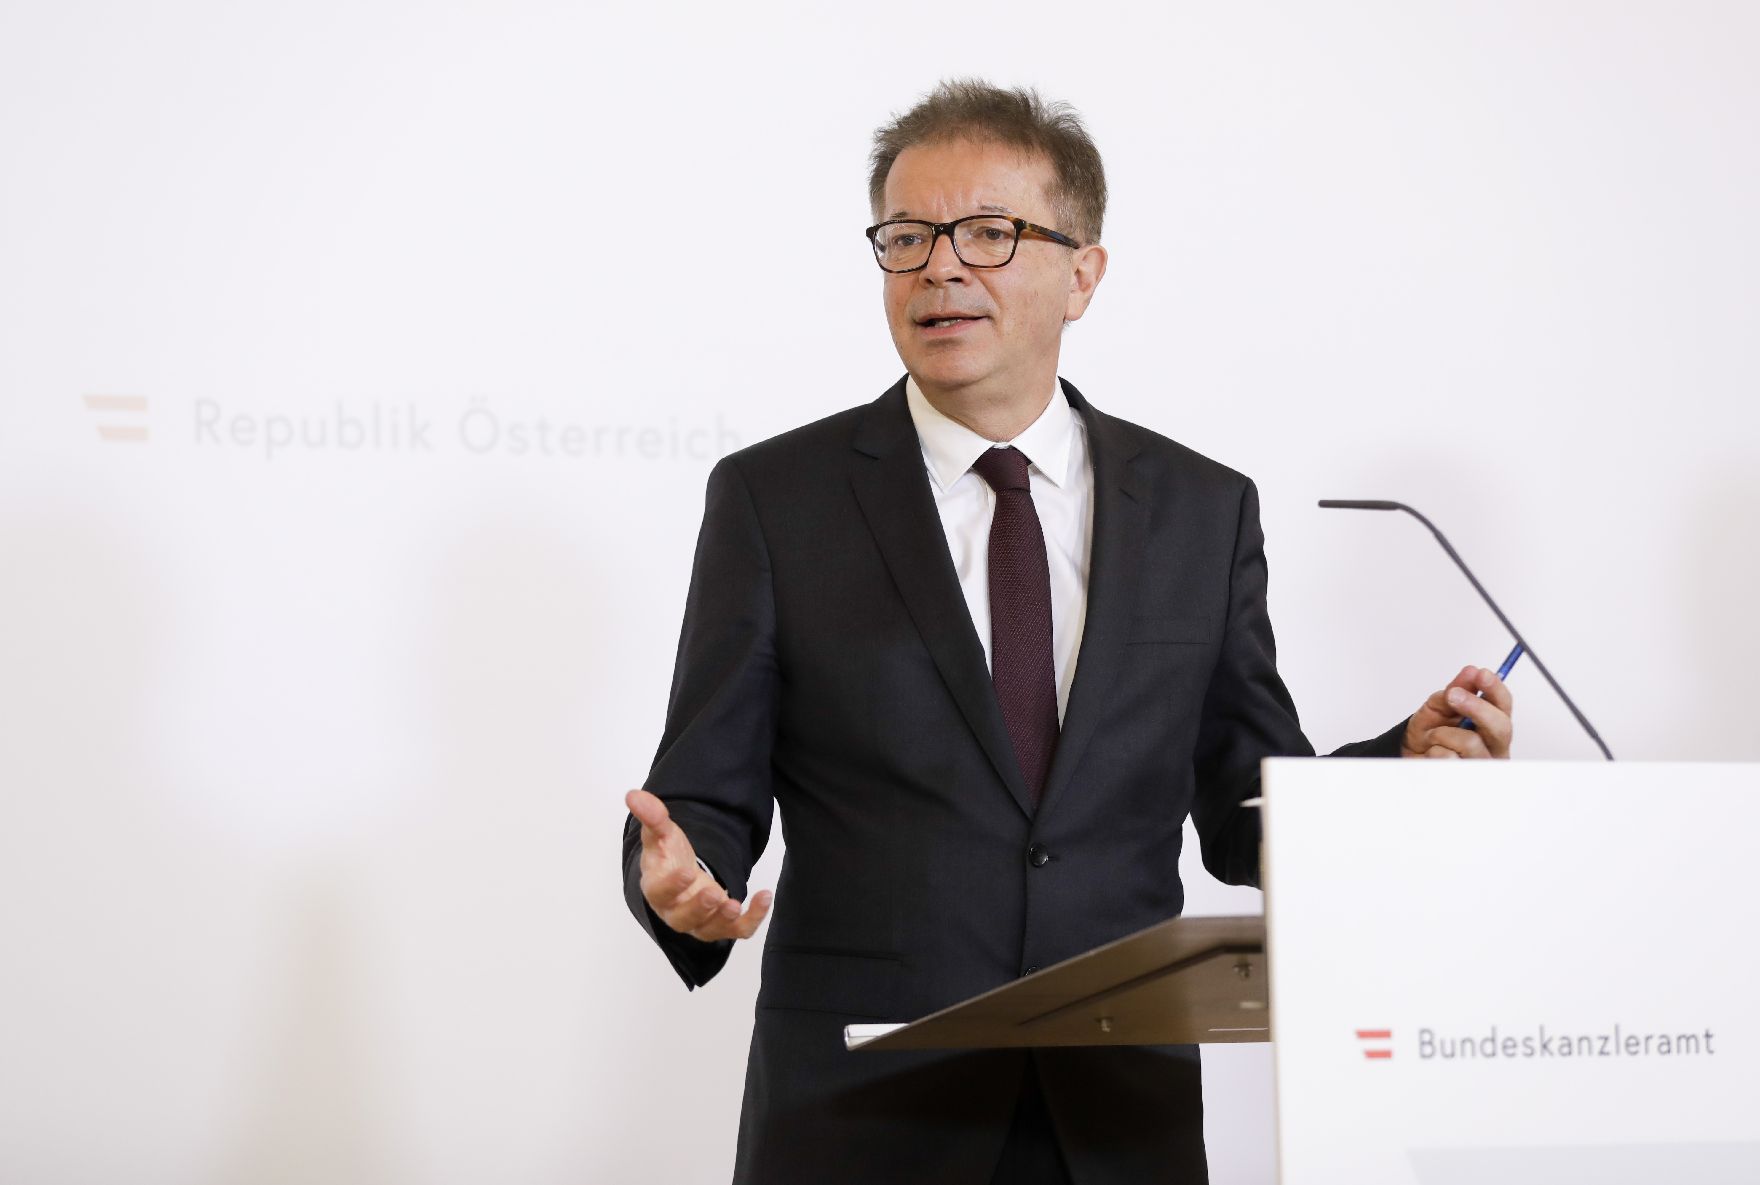 Am 1. April 2020 fand ein Pressestatement zu den Maßnahmen gegen die Krise im Bundeskanzleramt statt. Im Bild Gesundheitsminister Rudi Anschober.